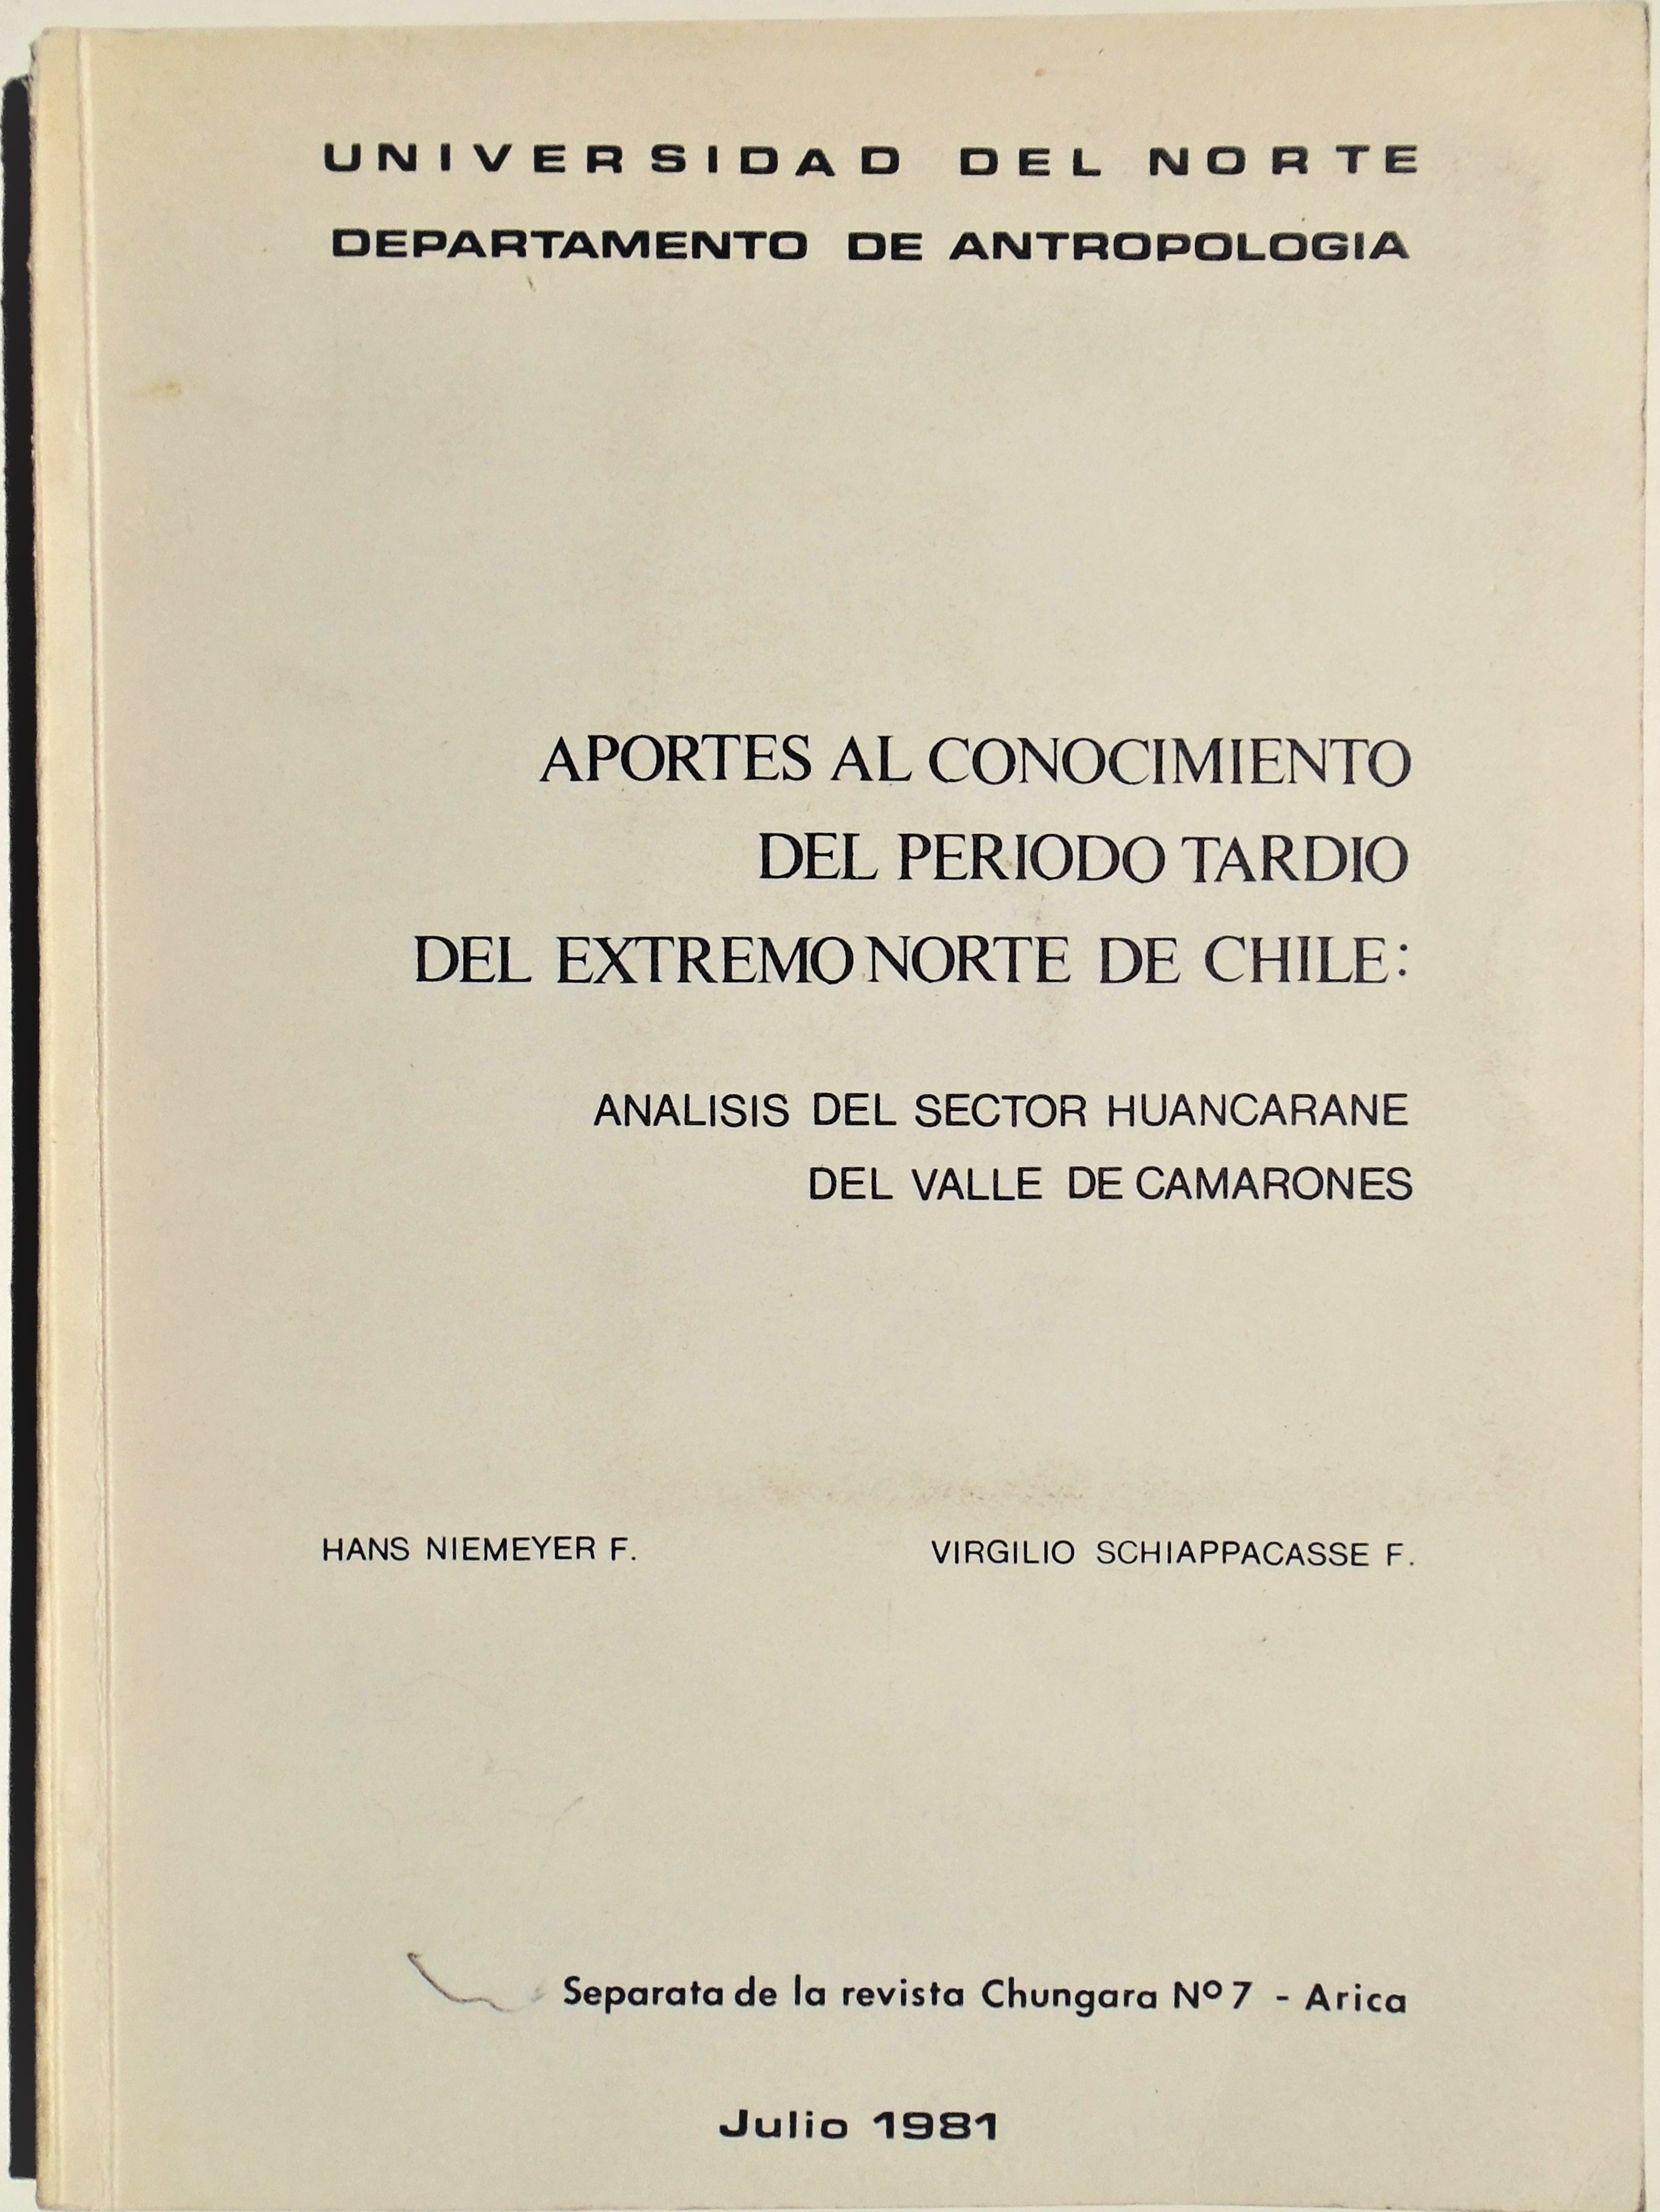 Hans Niemeyer; Virgilio Schiappacasse - Aportes al conocimiento del periodo tardío del extremo norte de Chile